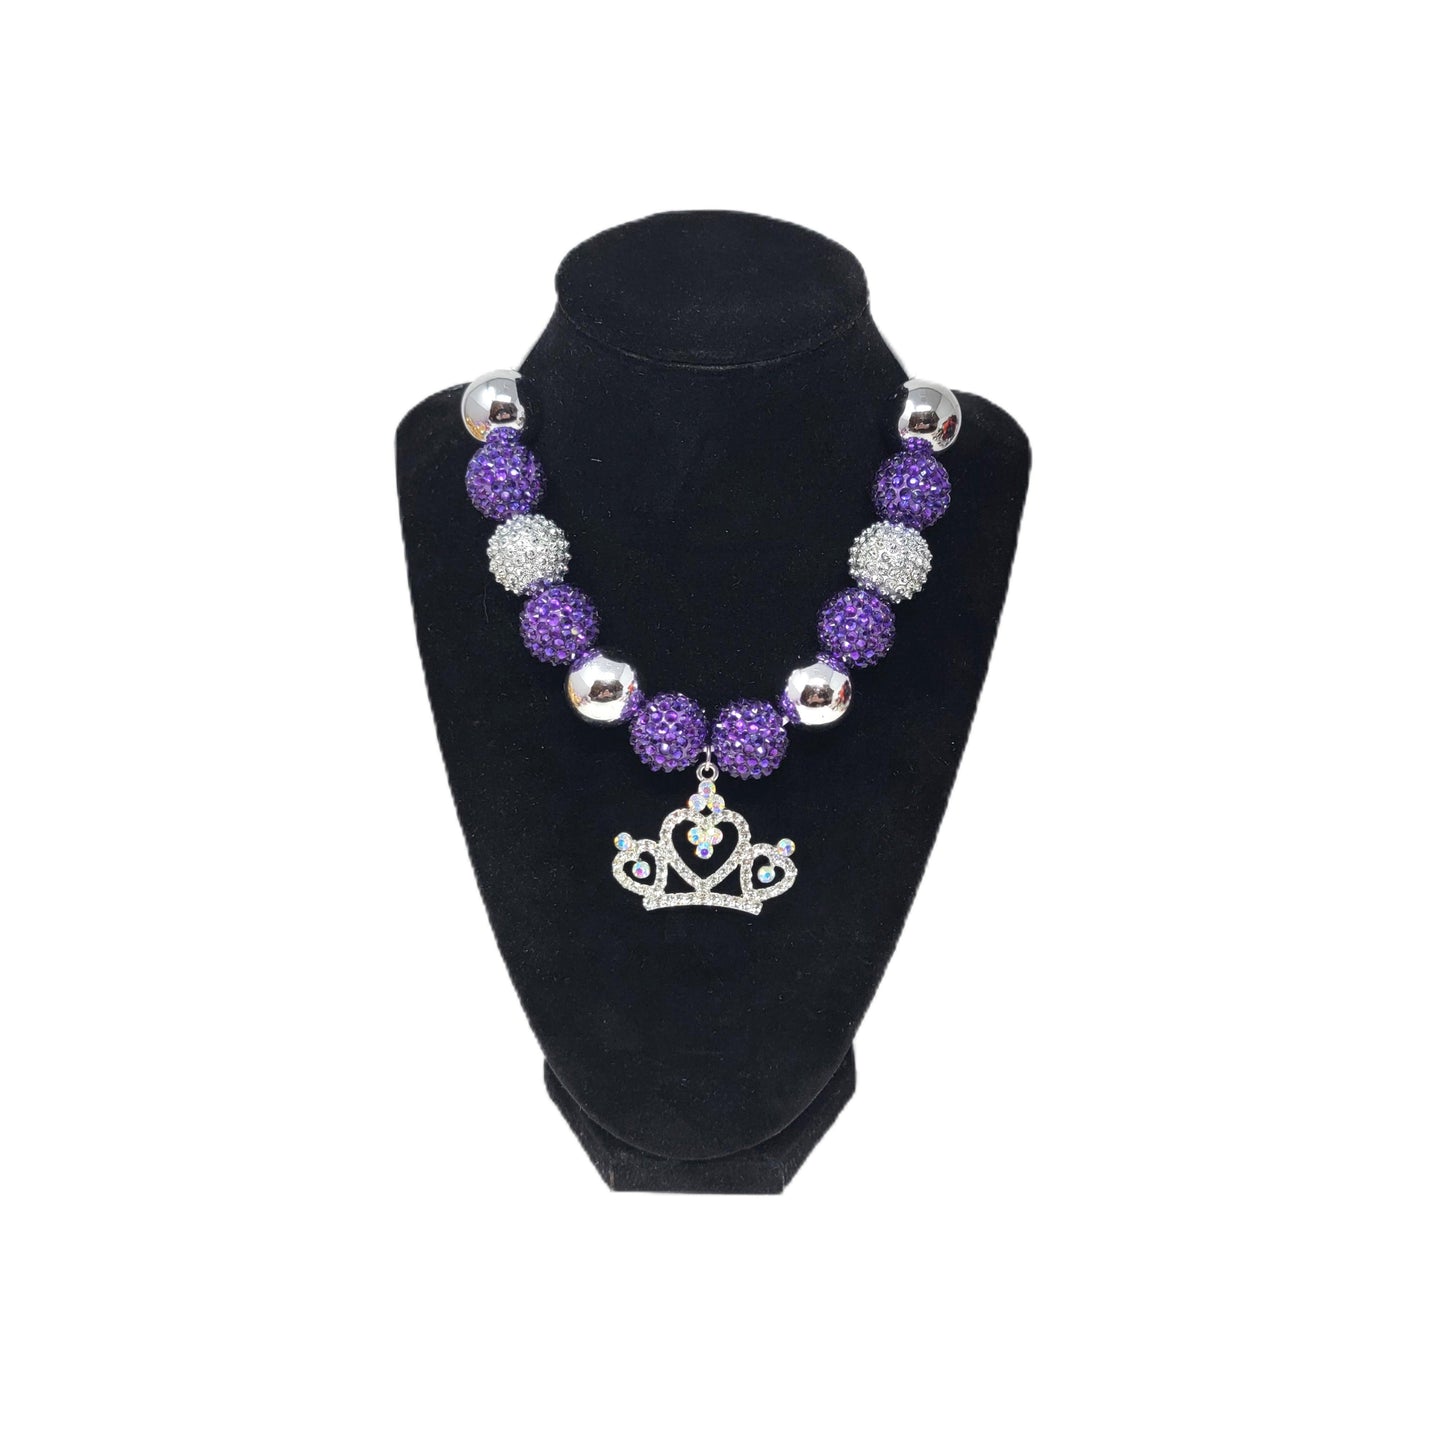 Purple & Silver Bubblegum Necklace with Crown Pendant